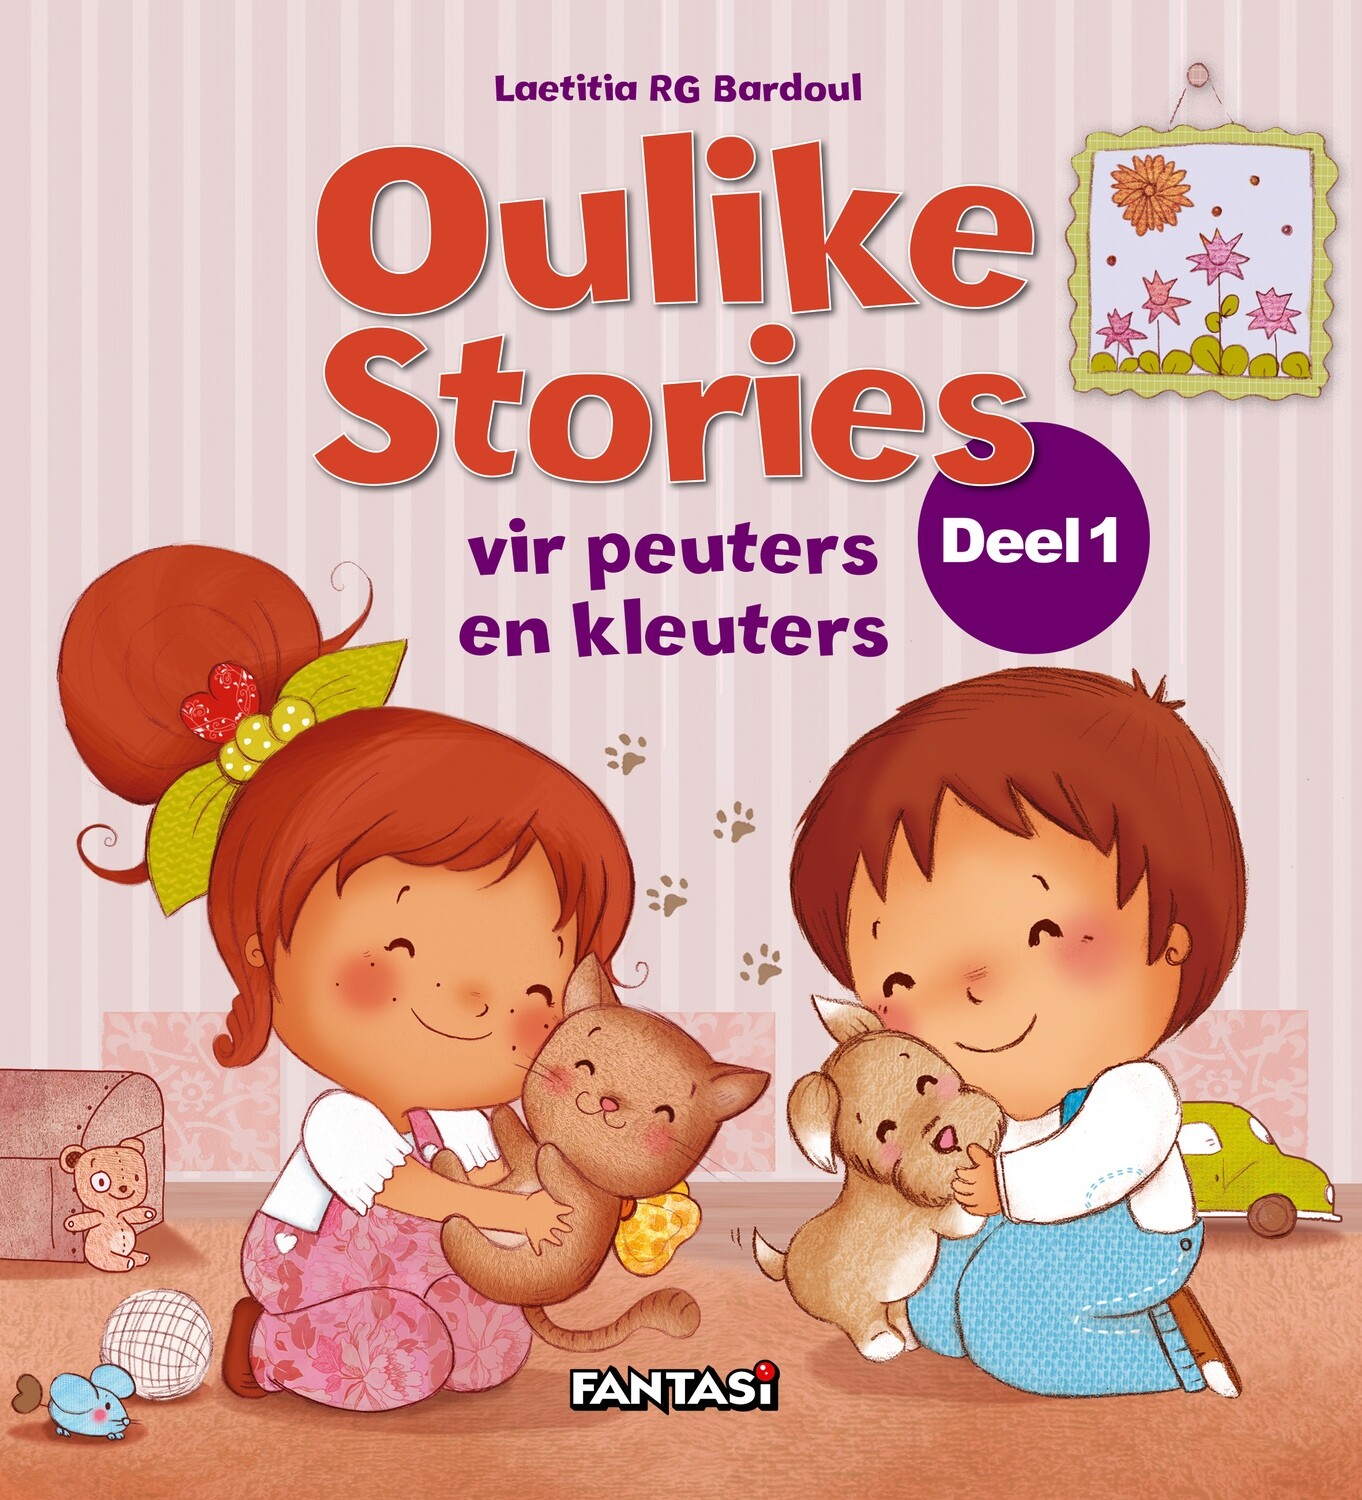 Oulike Stories vir peuters en kleuters Deel 1